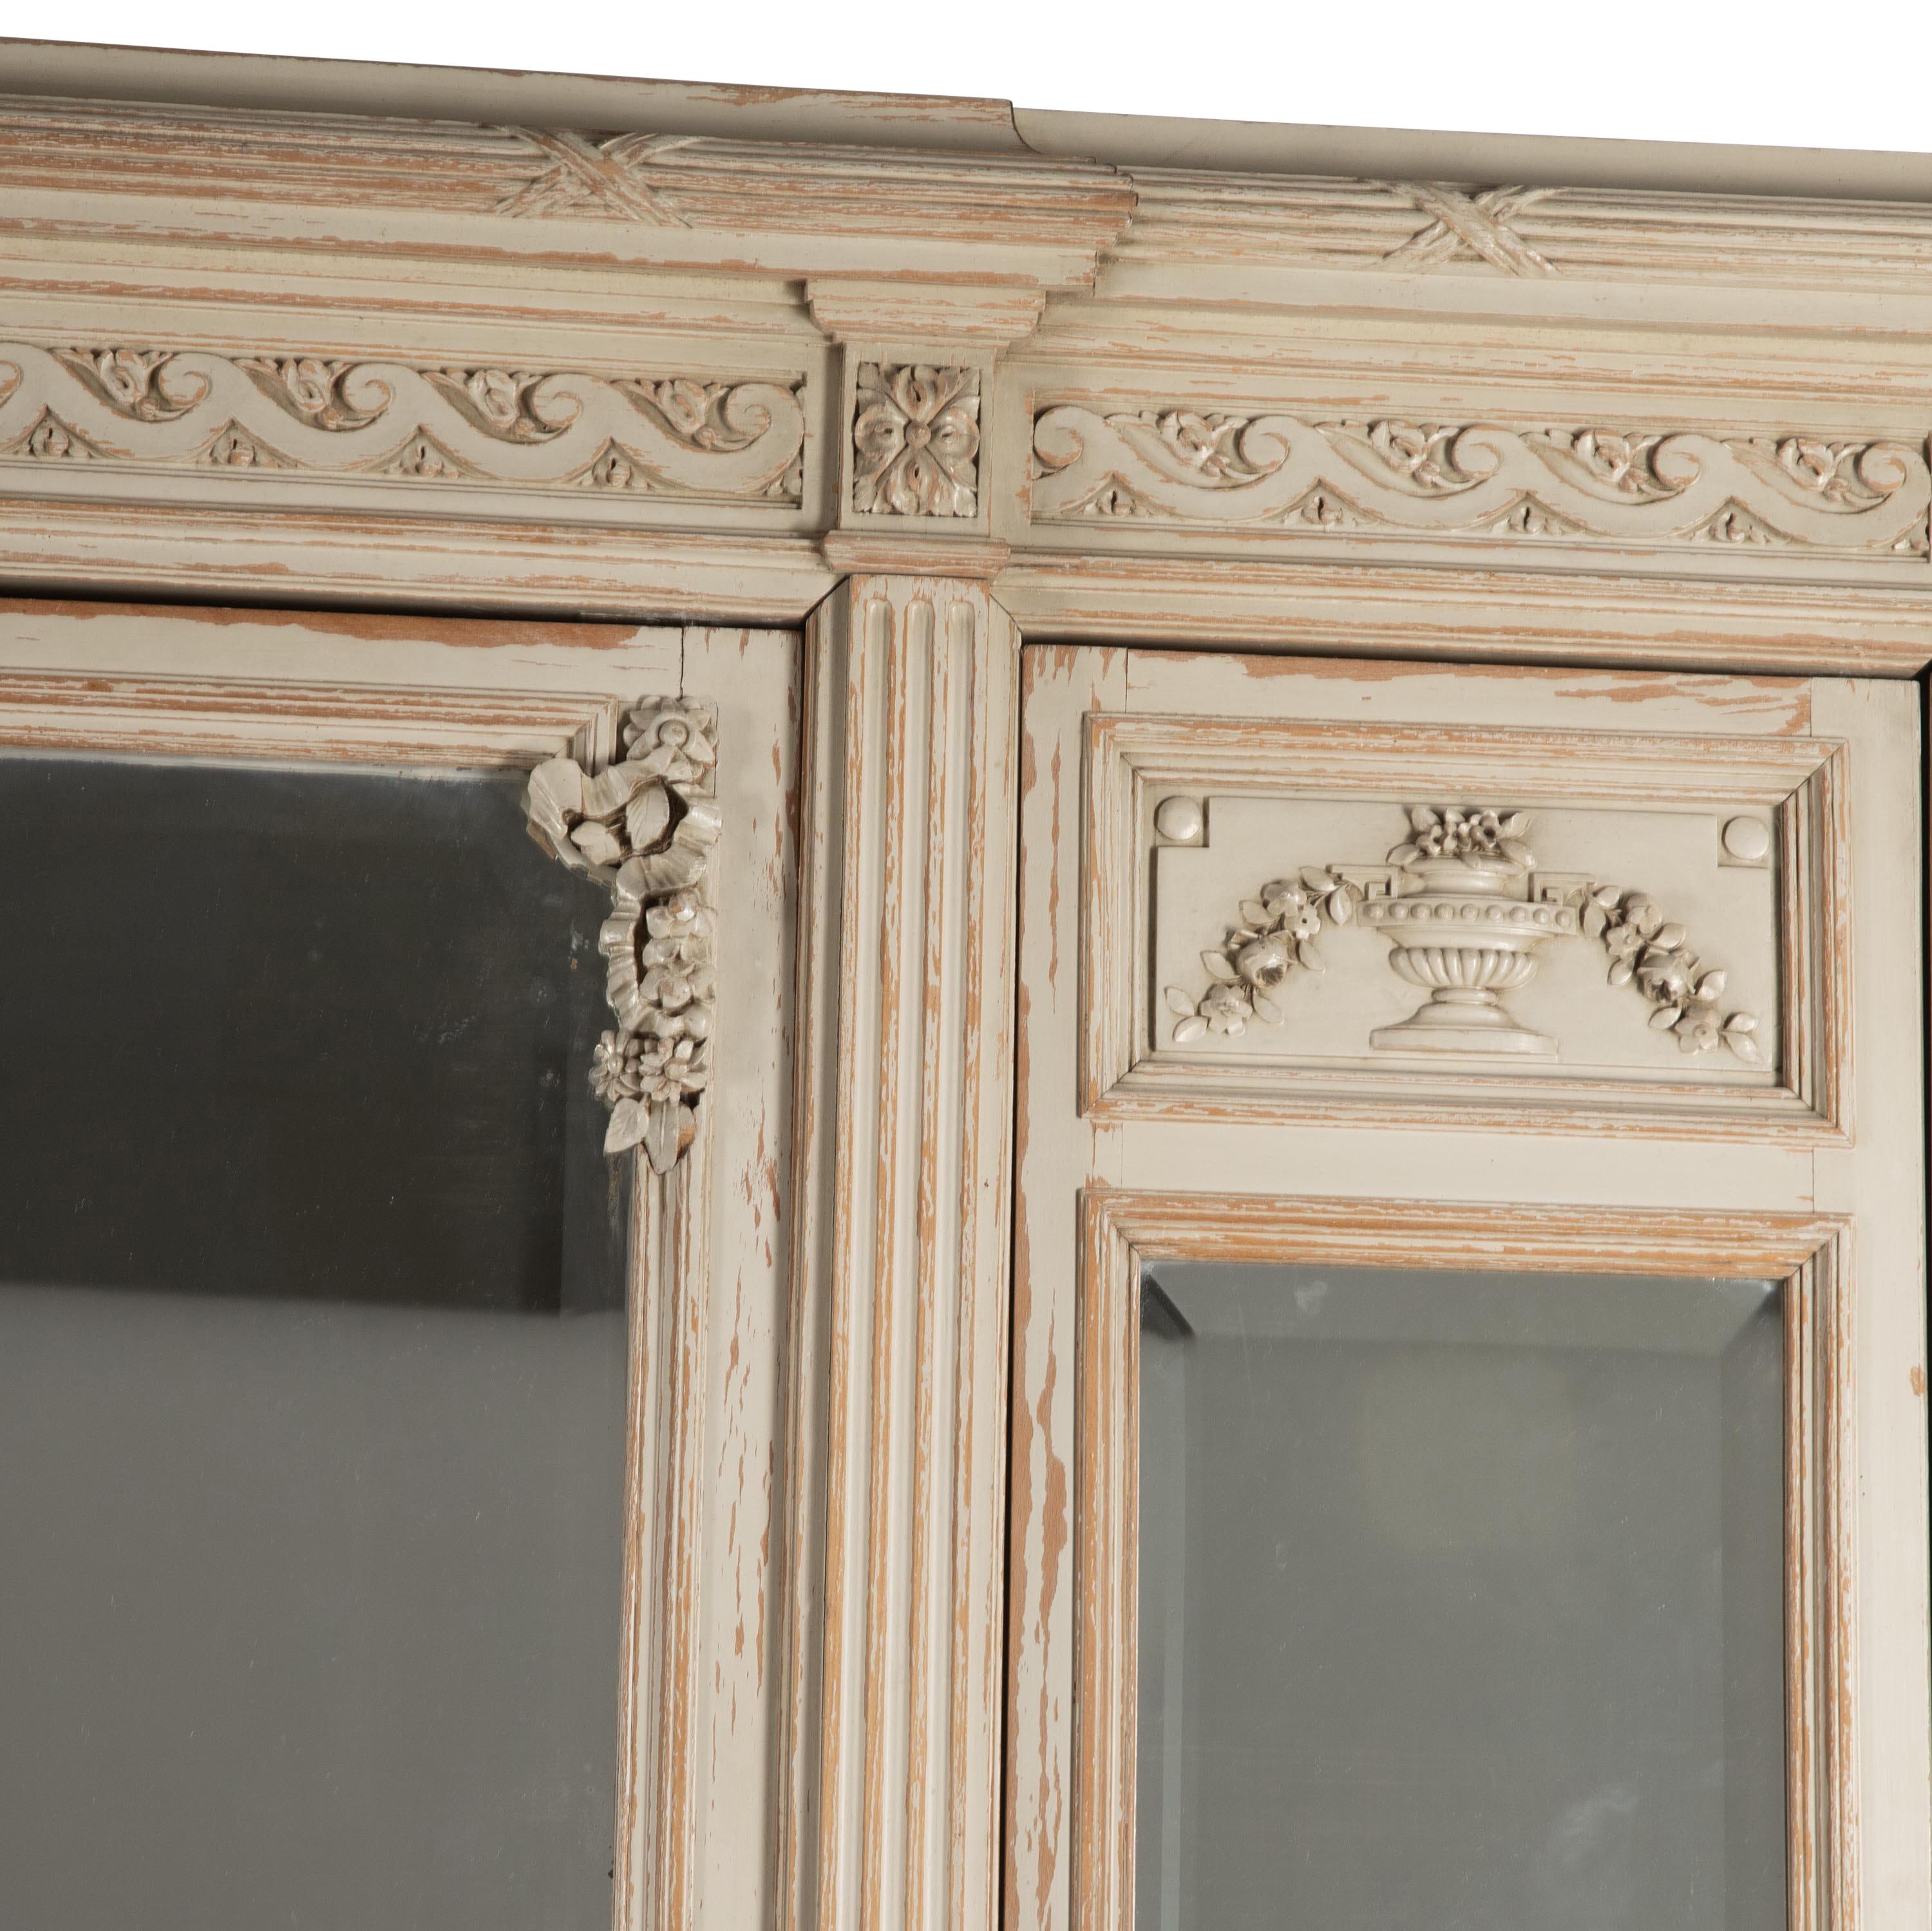 Armoire française du 19ème siècle de style Louis XVI.
Avec fronton décoratif sculpté, deux portes latérales étroites avec verre miroir biseauté s'ouvrant sur des étagères.
Une autre grande porte en miroir à bord biseauté au centre s'ouvre sur un